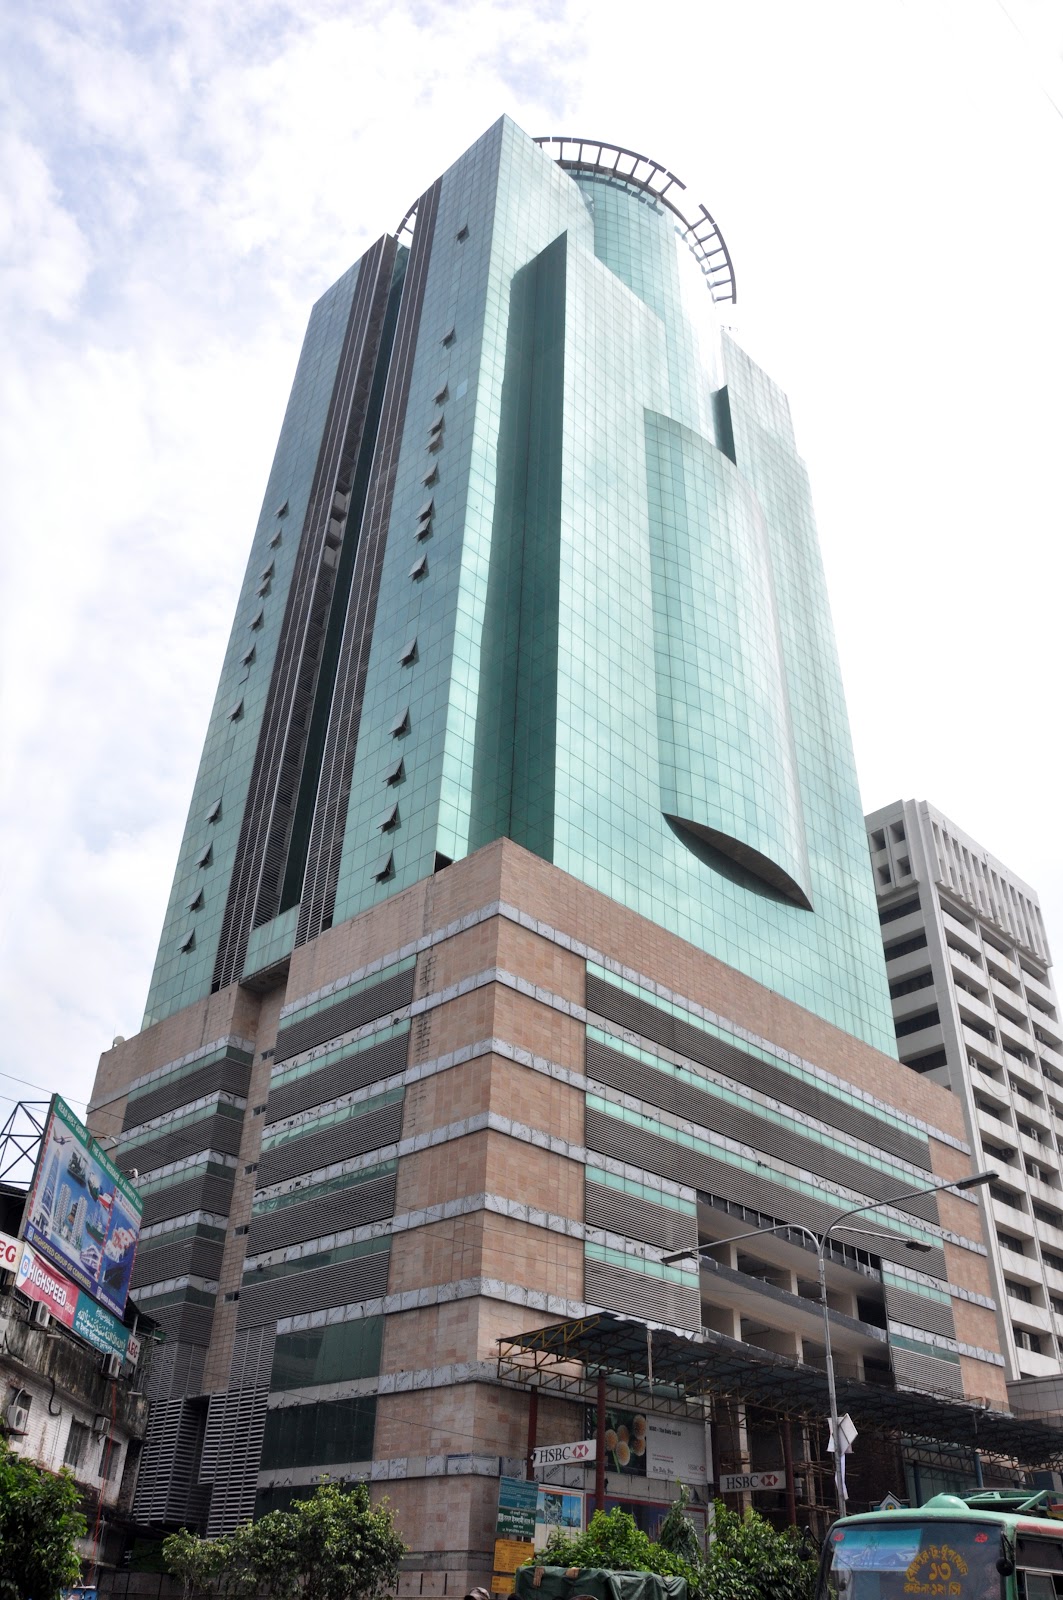 City Centre Dhaka - Wikipedia